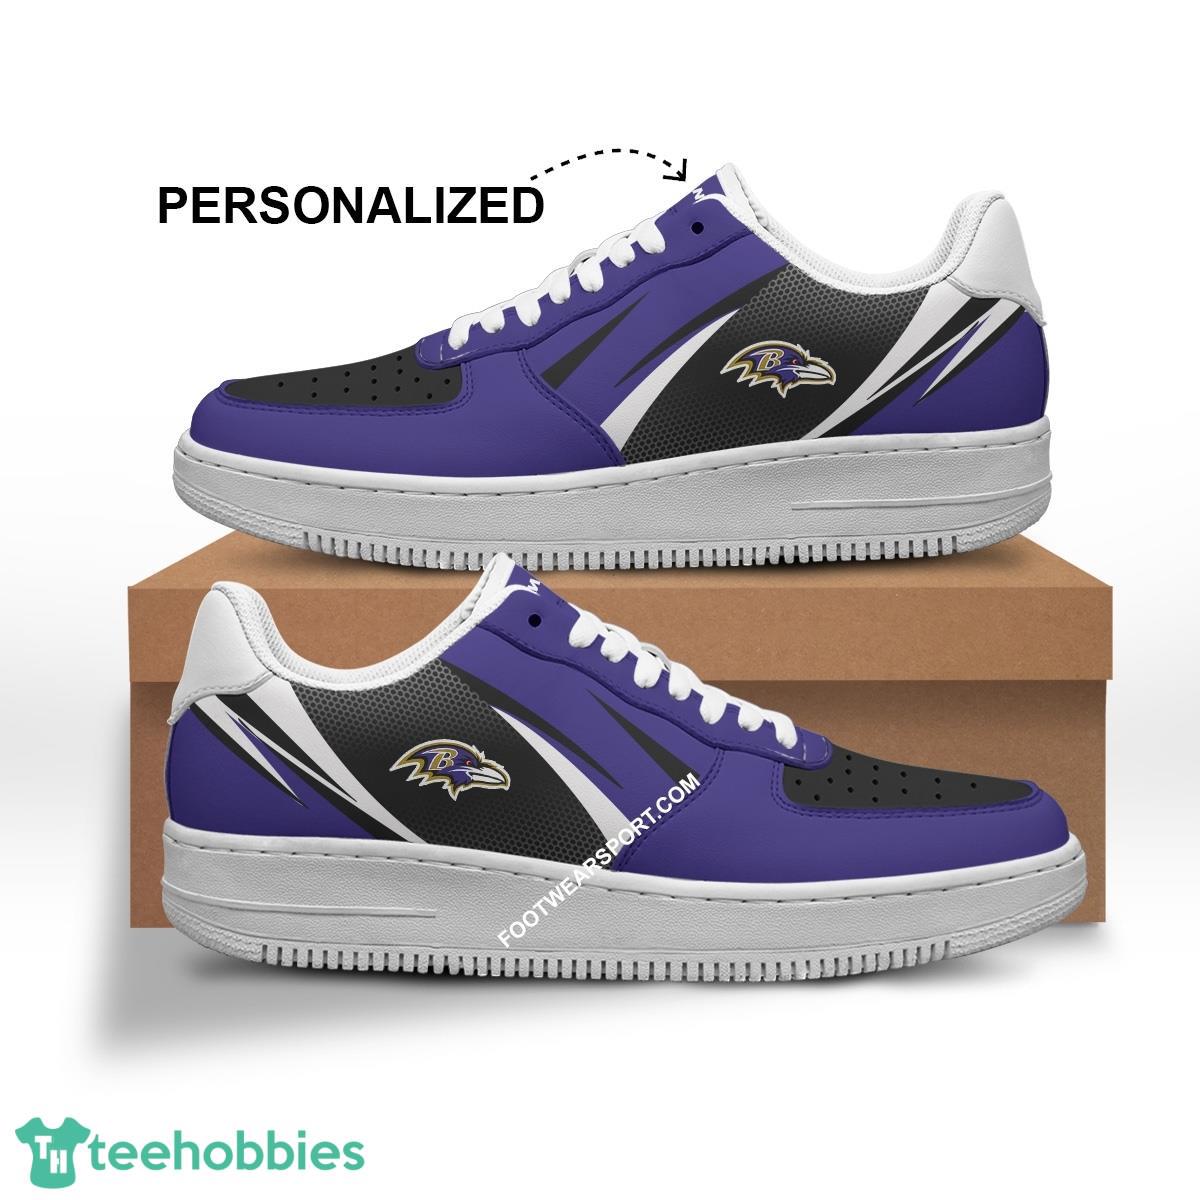 Custom Name Baltimore Ravens Air Force 1 Shoes Trending Design Gift For Men Women Fans - NFL Baltimore Ravens Air Force 1 Shoes Personalized Style 1